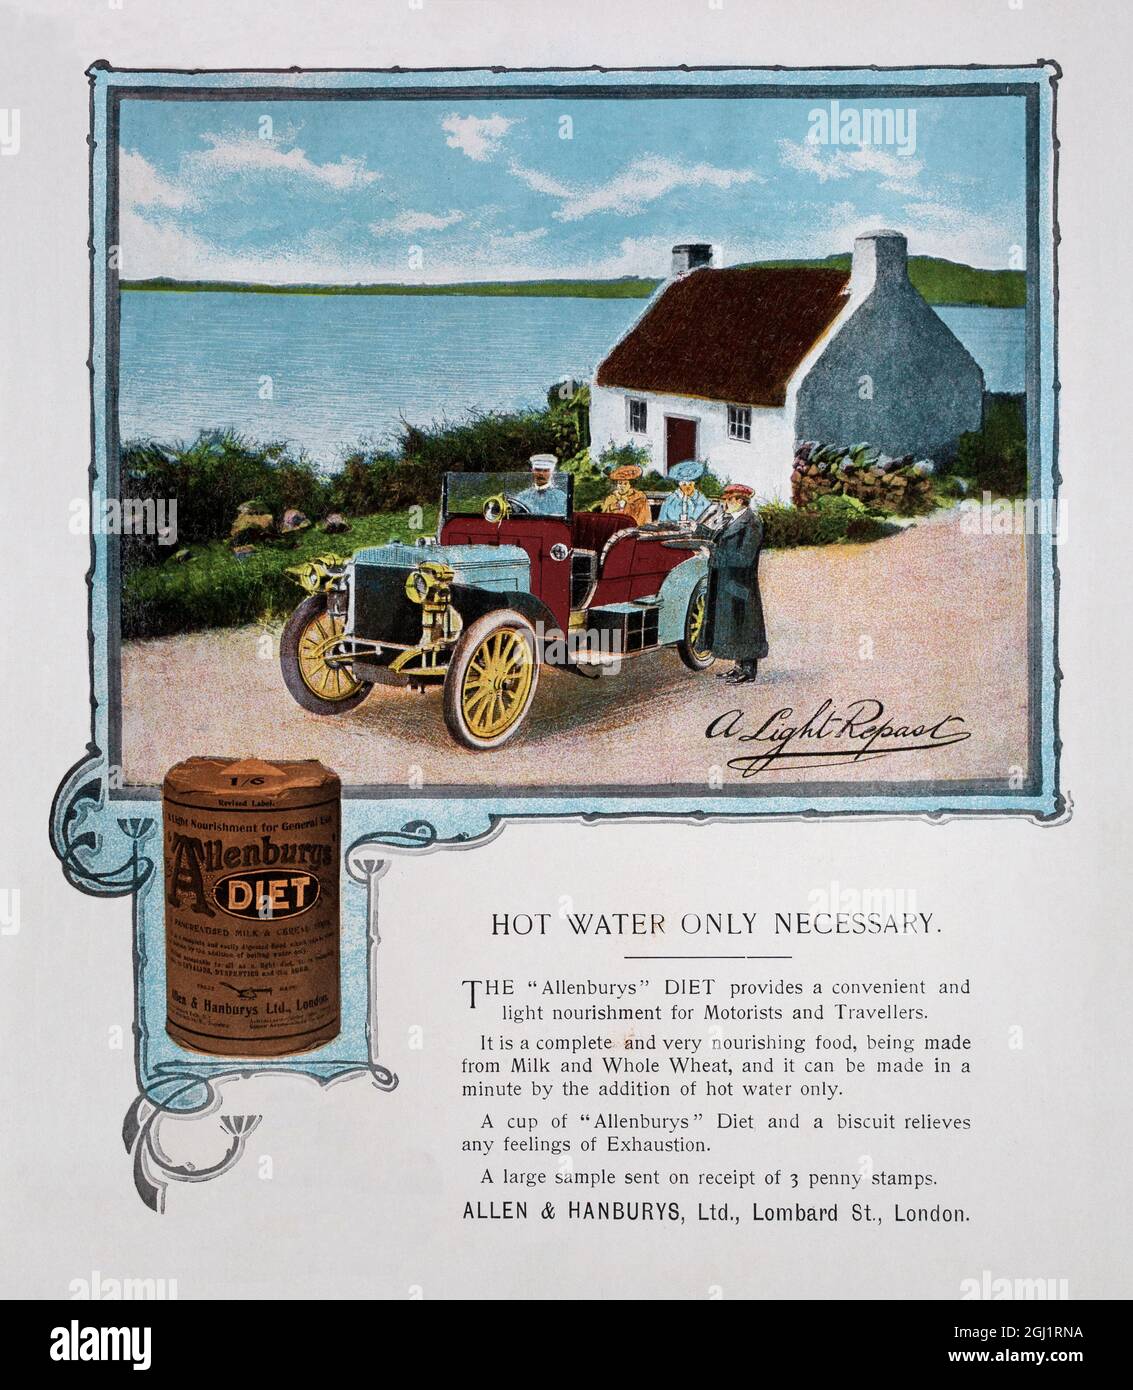 Une publicité à la presse du début du XXe siècle pour le régime d'Allenbury, un aliment léger pour les voyageurs Banque D'Images